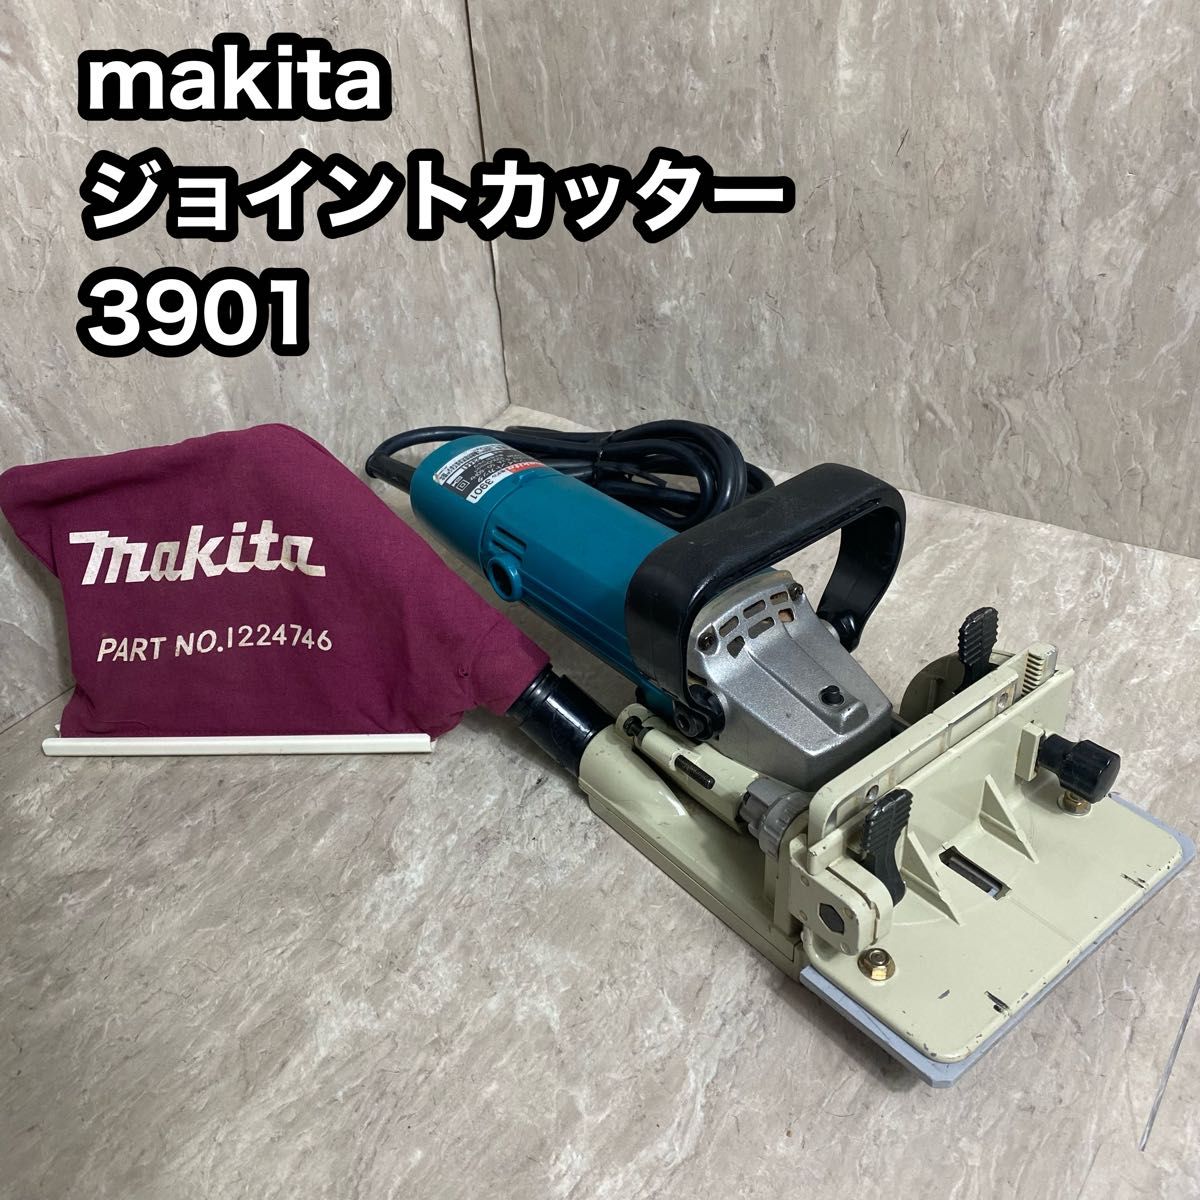 makita マキタ ジョイントカッター 3901 電動工具 DIY